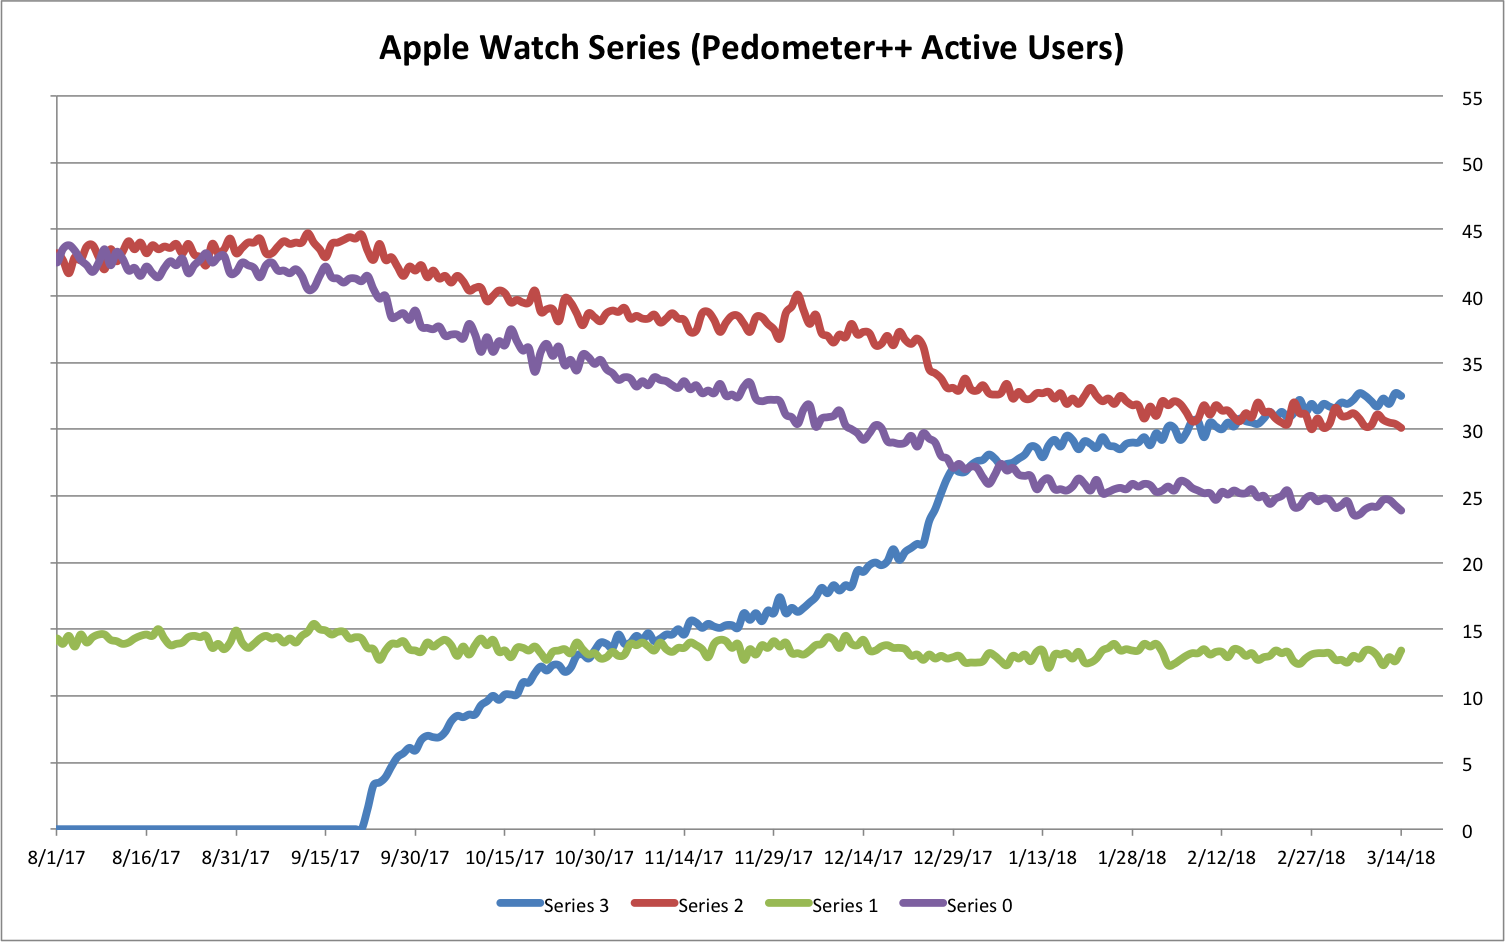 Apple Watch popular models